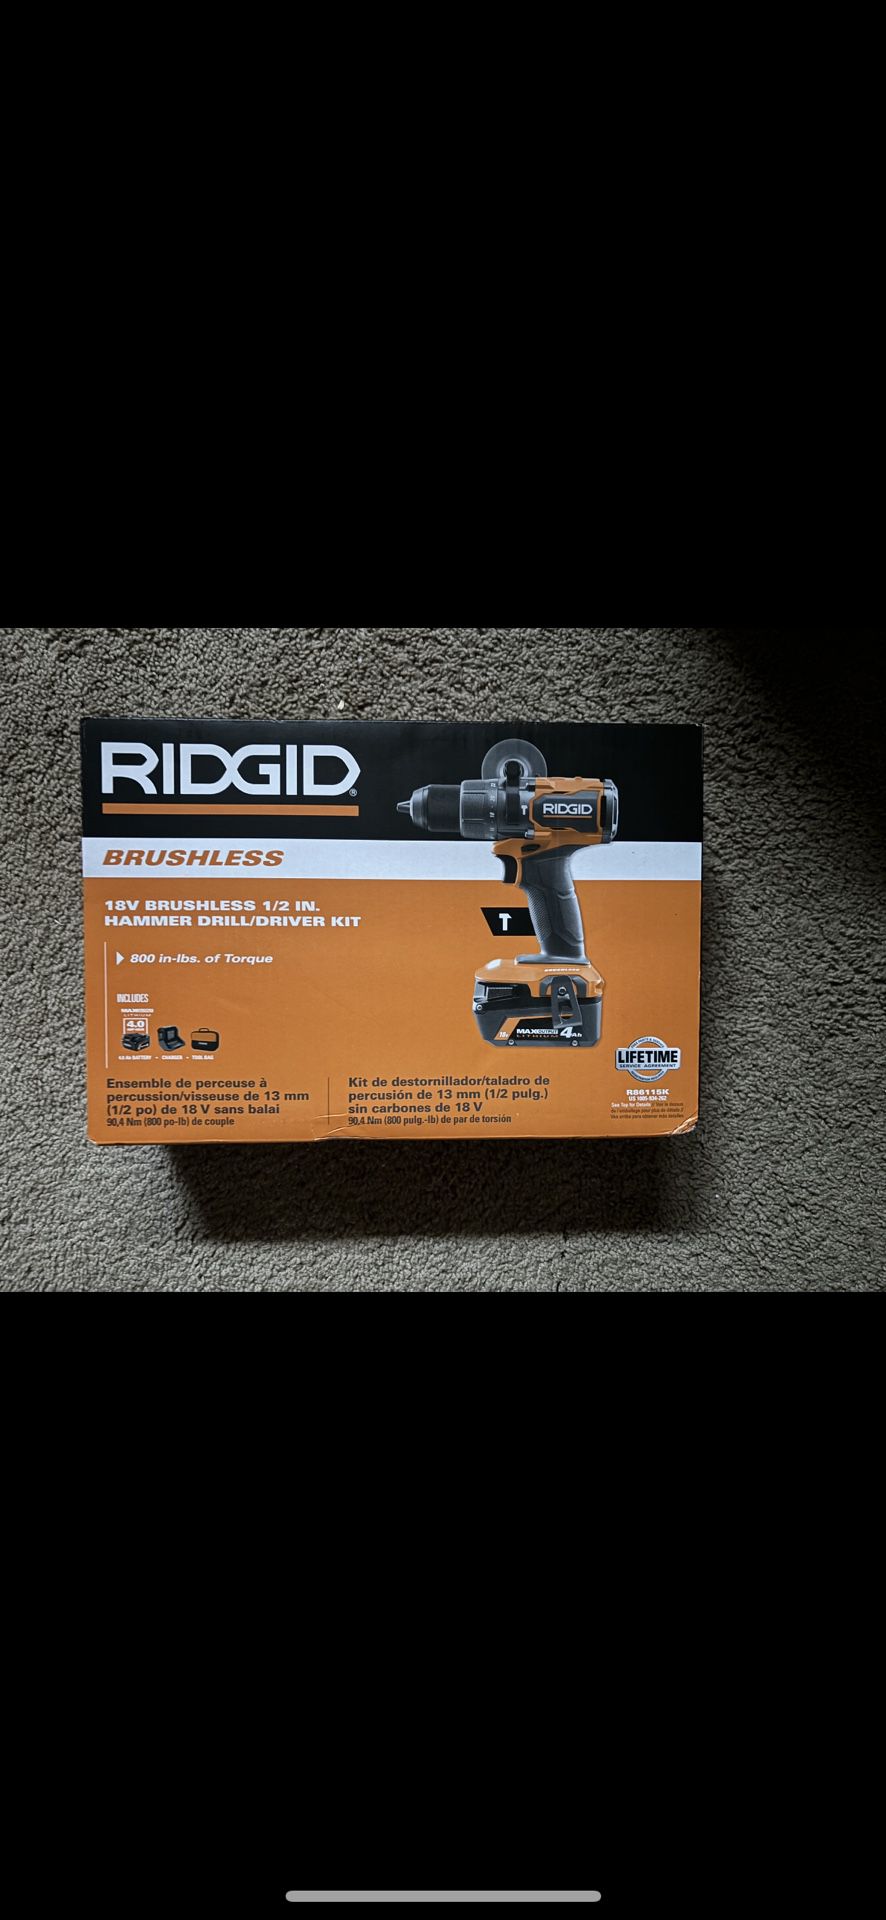 Ridgid 18V Brushless Cordless 1/2 in. Hammer Drill/Driver Kit w